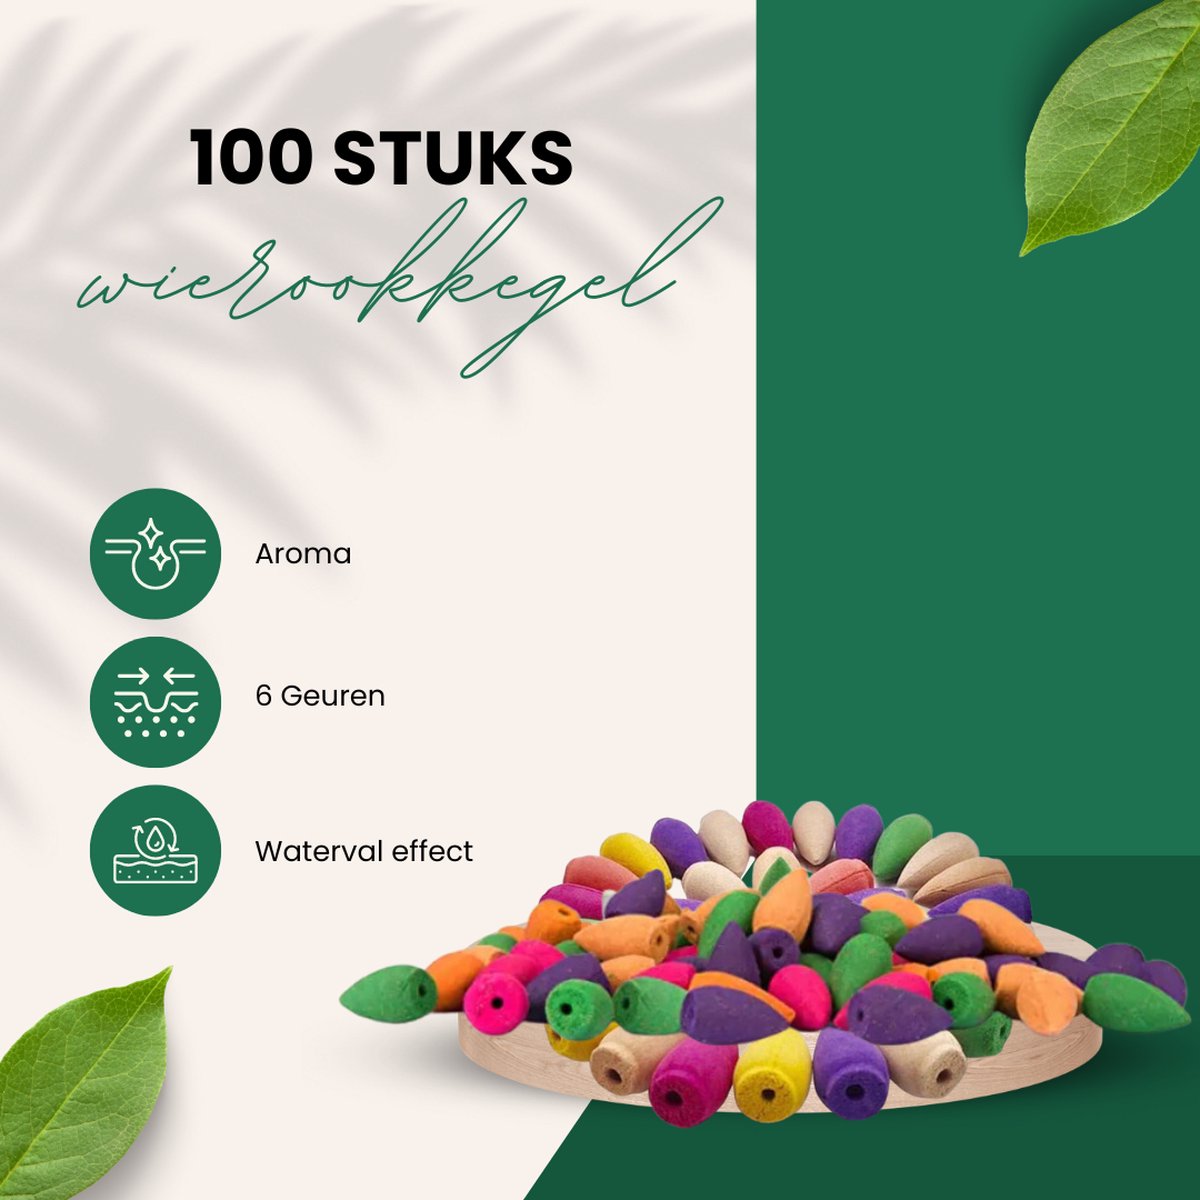 Wierook kegels - lavendel - 100 stuks - Wierook waterval - 6 geuren - rozen - Meditatie - Mindfulness - Ontspanning - Natuurlijke aroma's